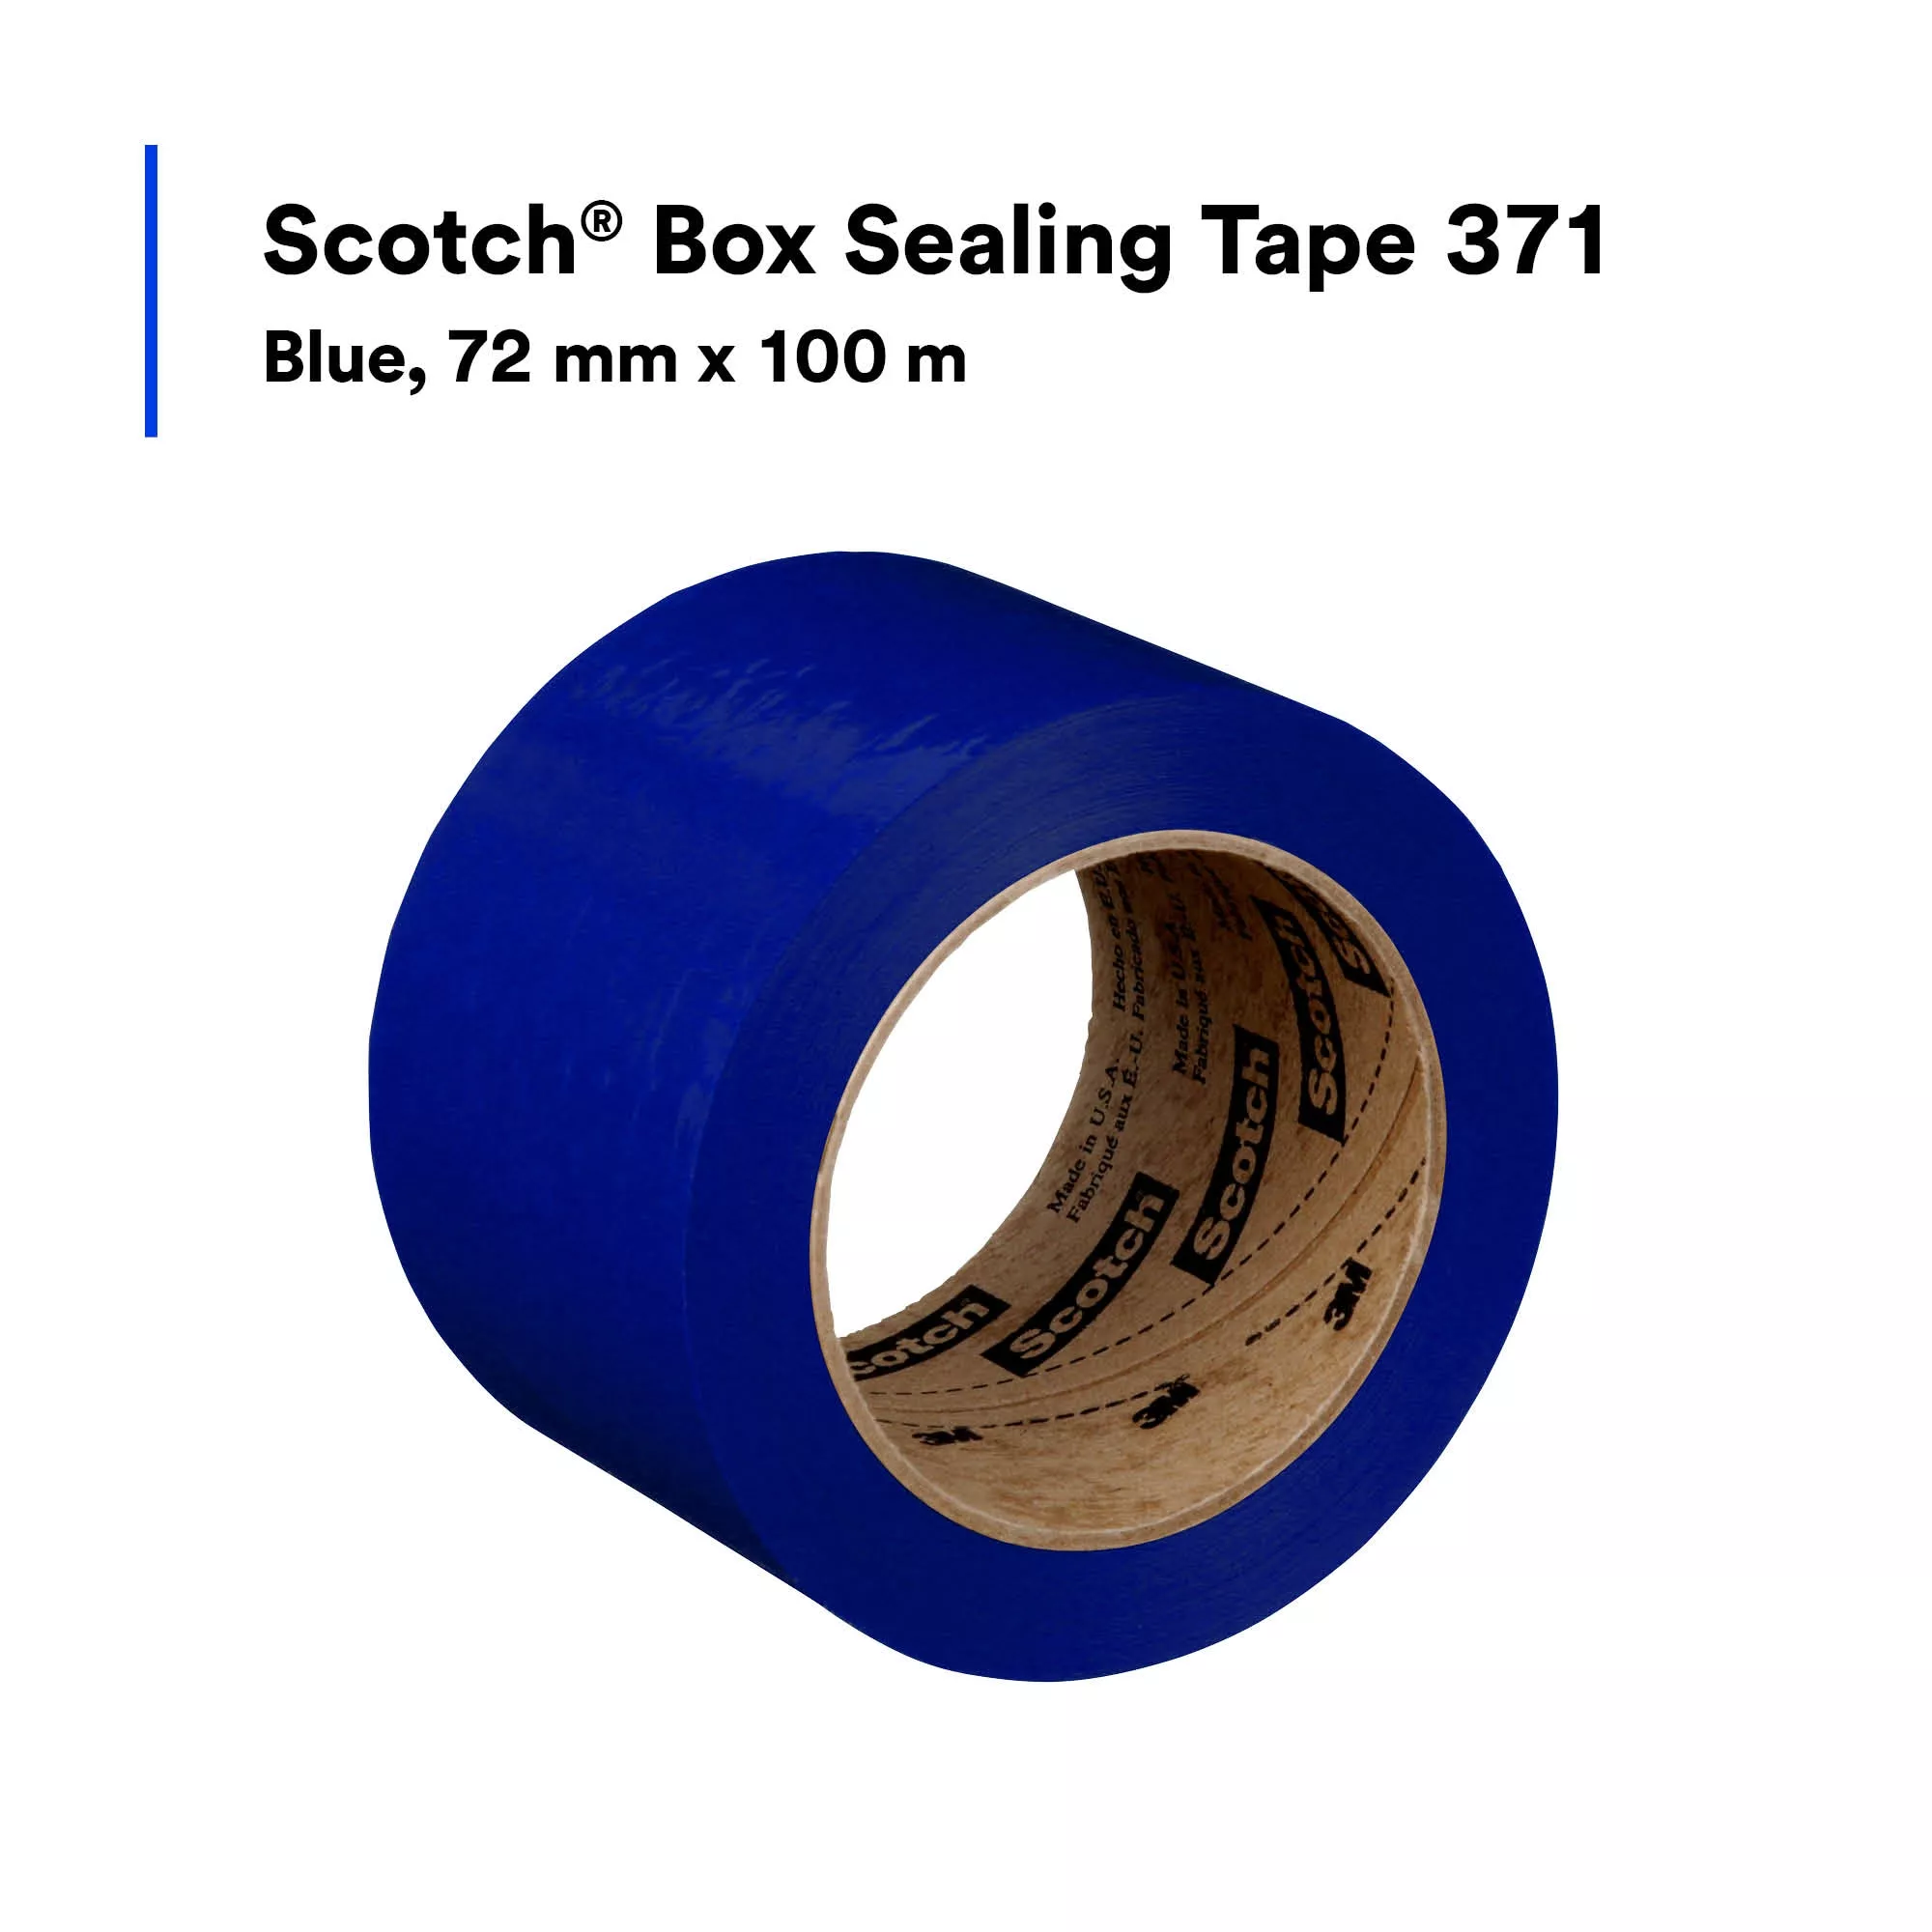 SKU 7010334648 | Scotch® Box Sealing Tape 371